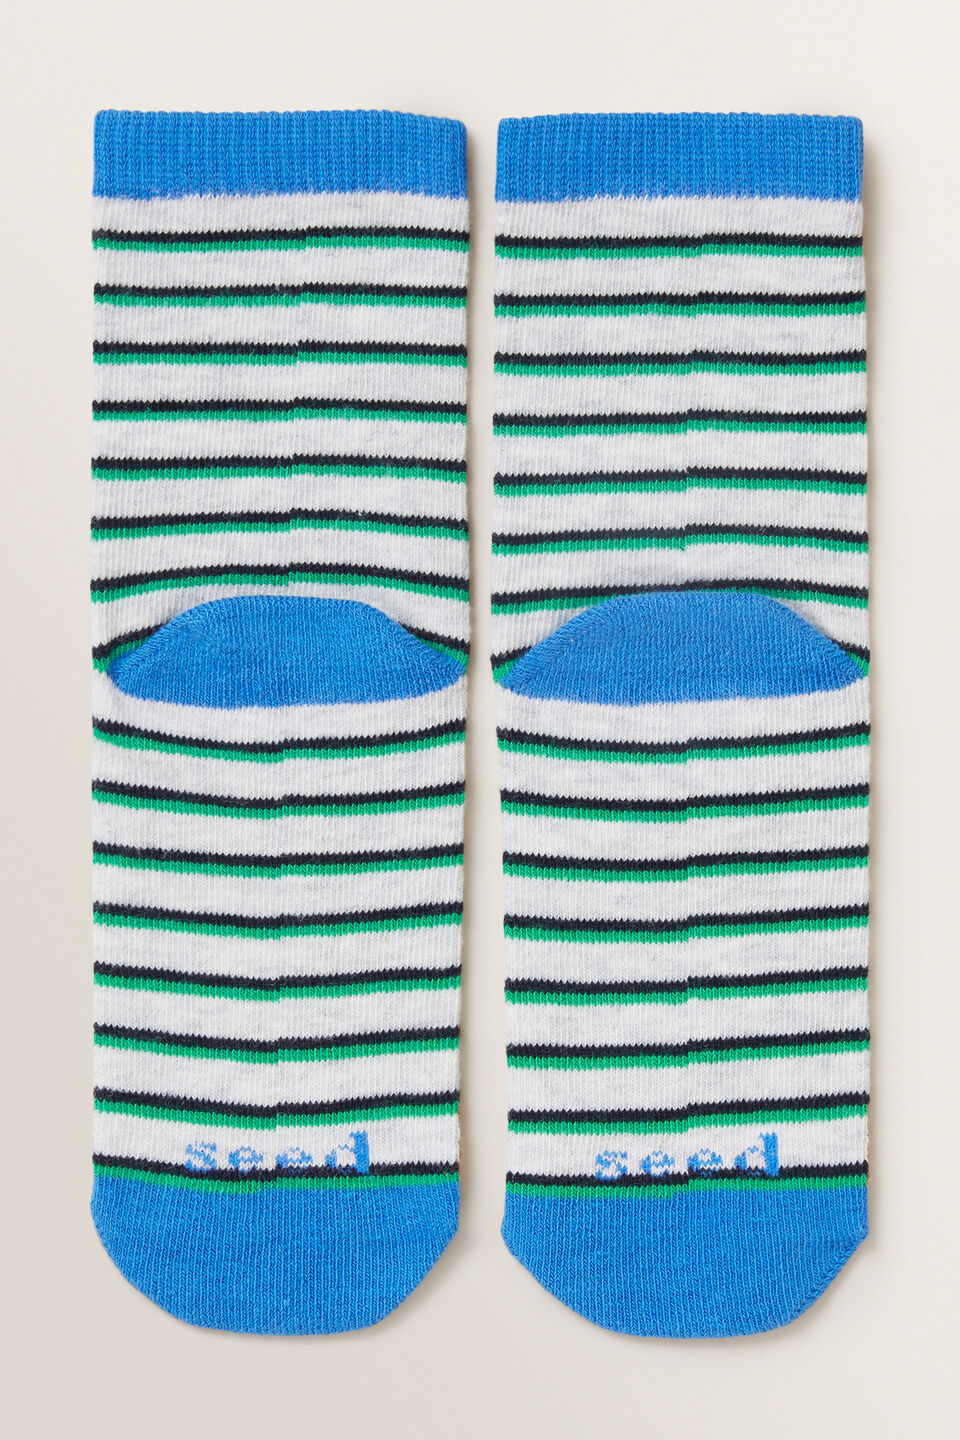 Bear Socks  Multi